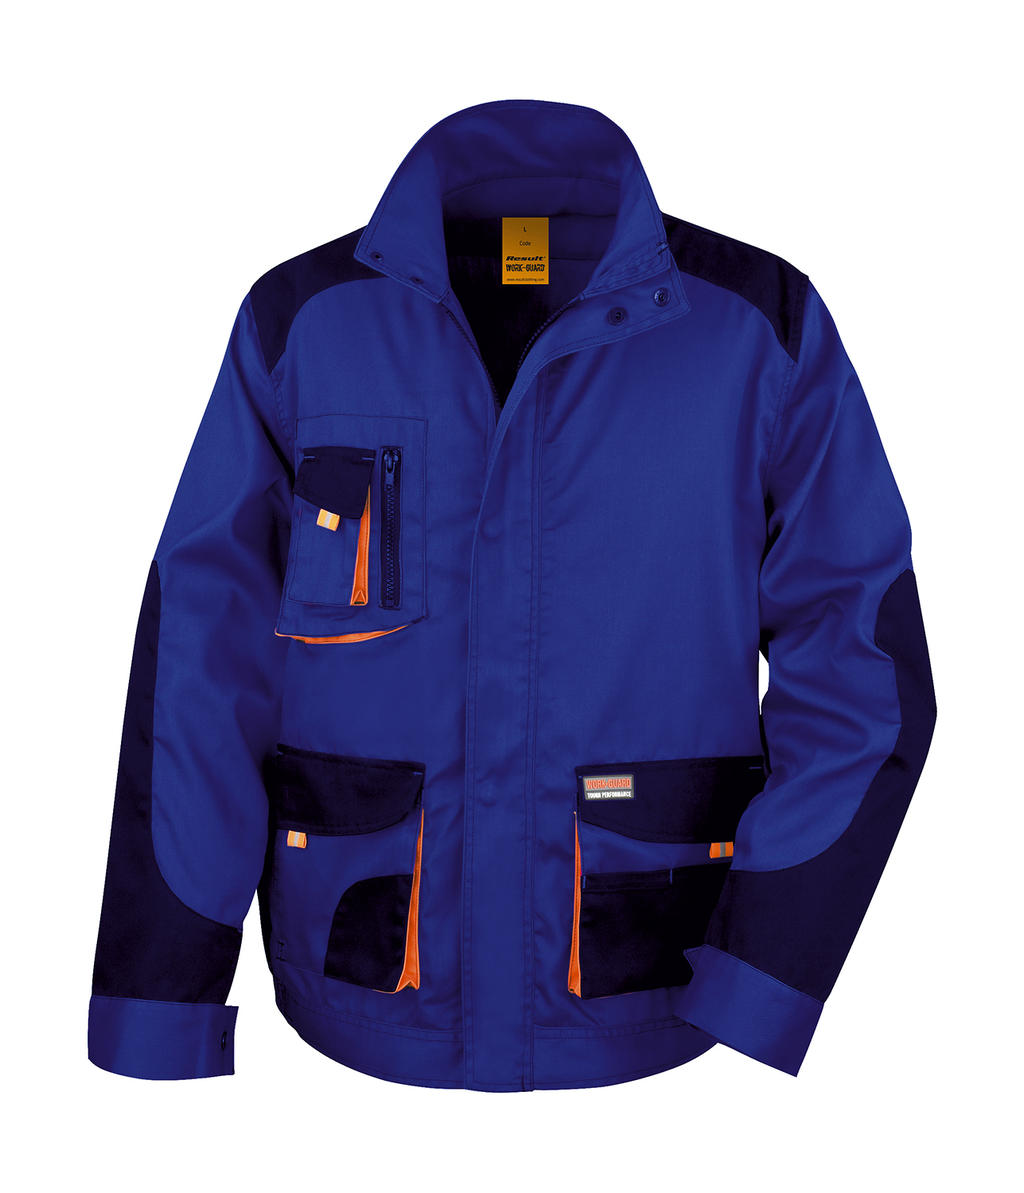  LITE Jacket in Farbe Royal/Navy/Orange